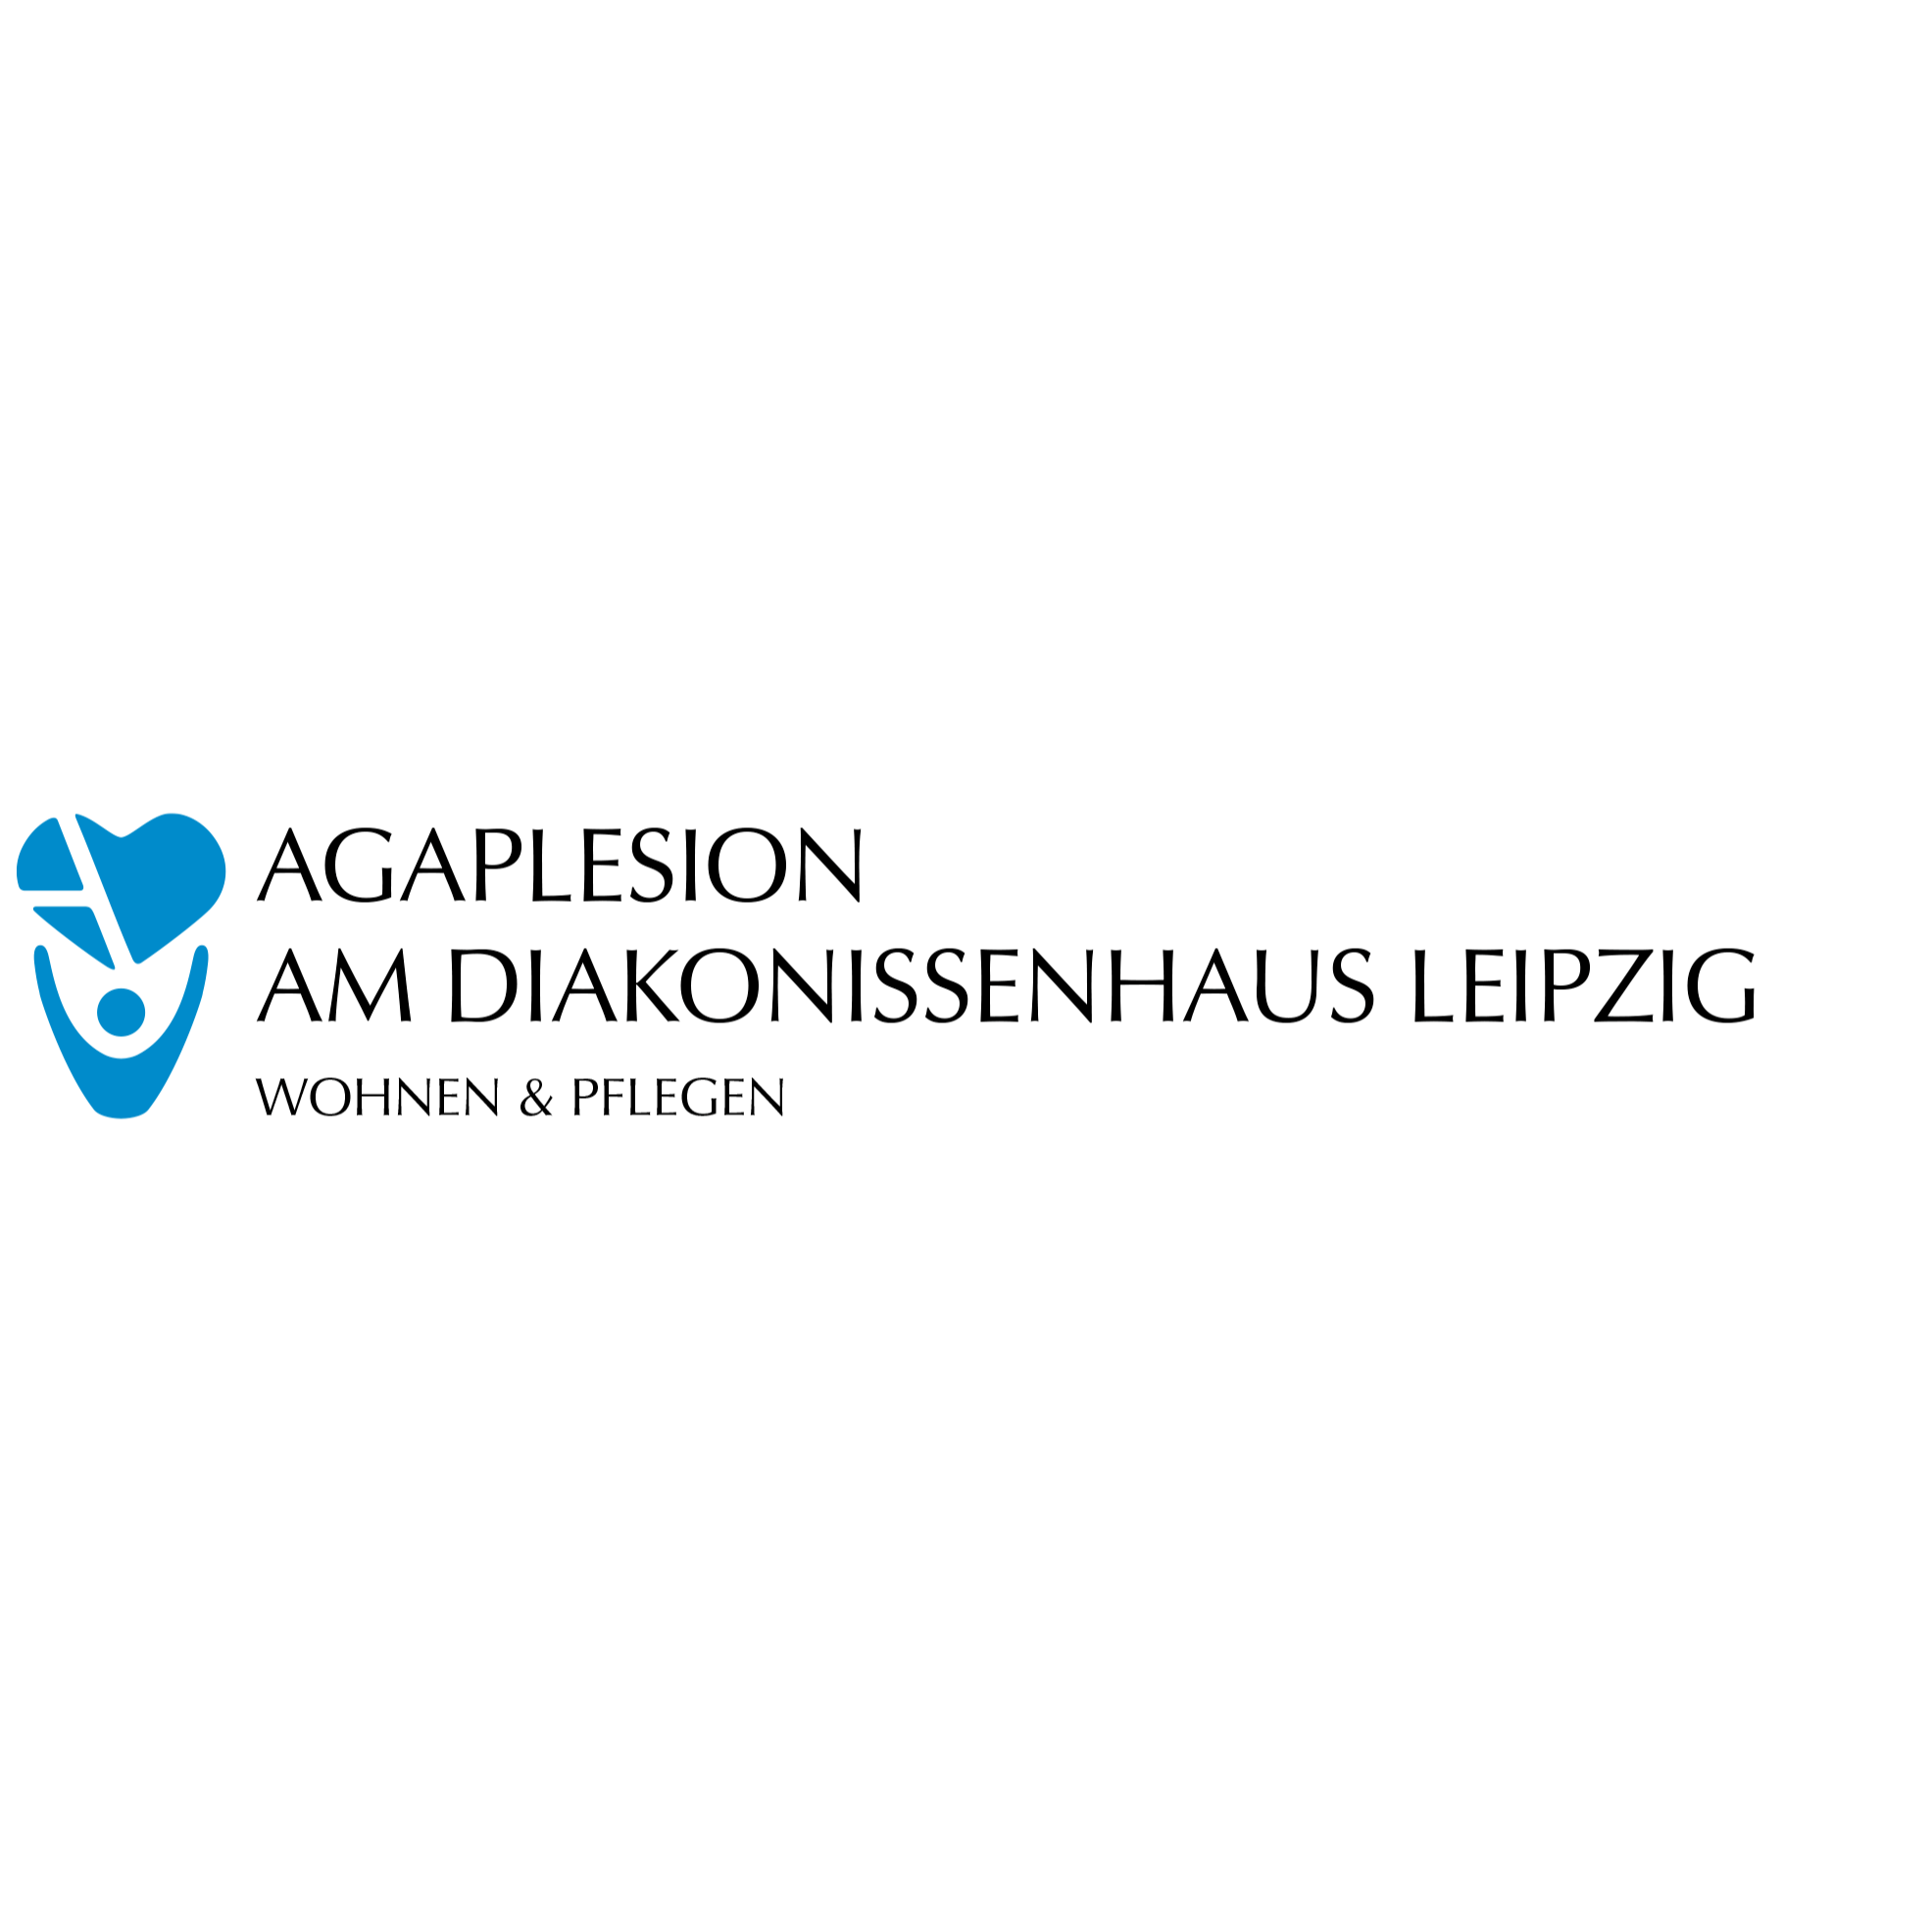 AGAPLESION AM DIAKONISSENHAUS LEIPZIG Logo